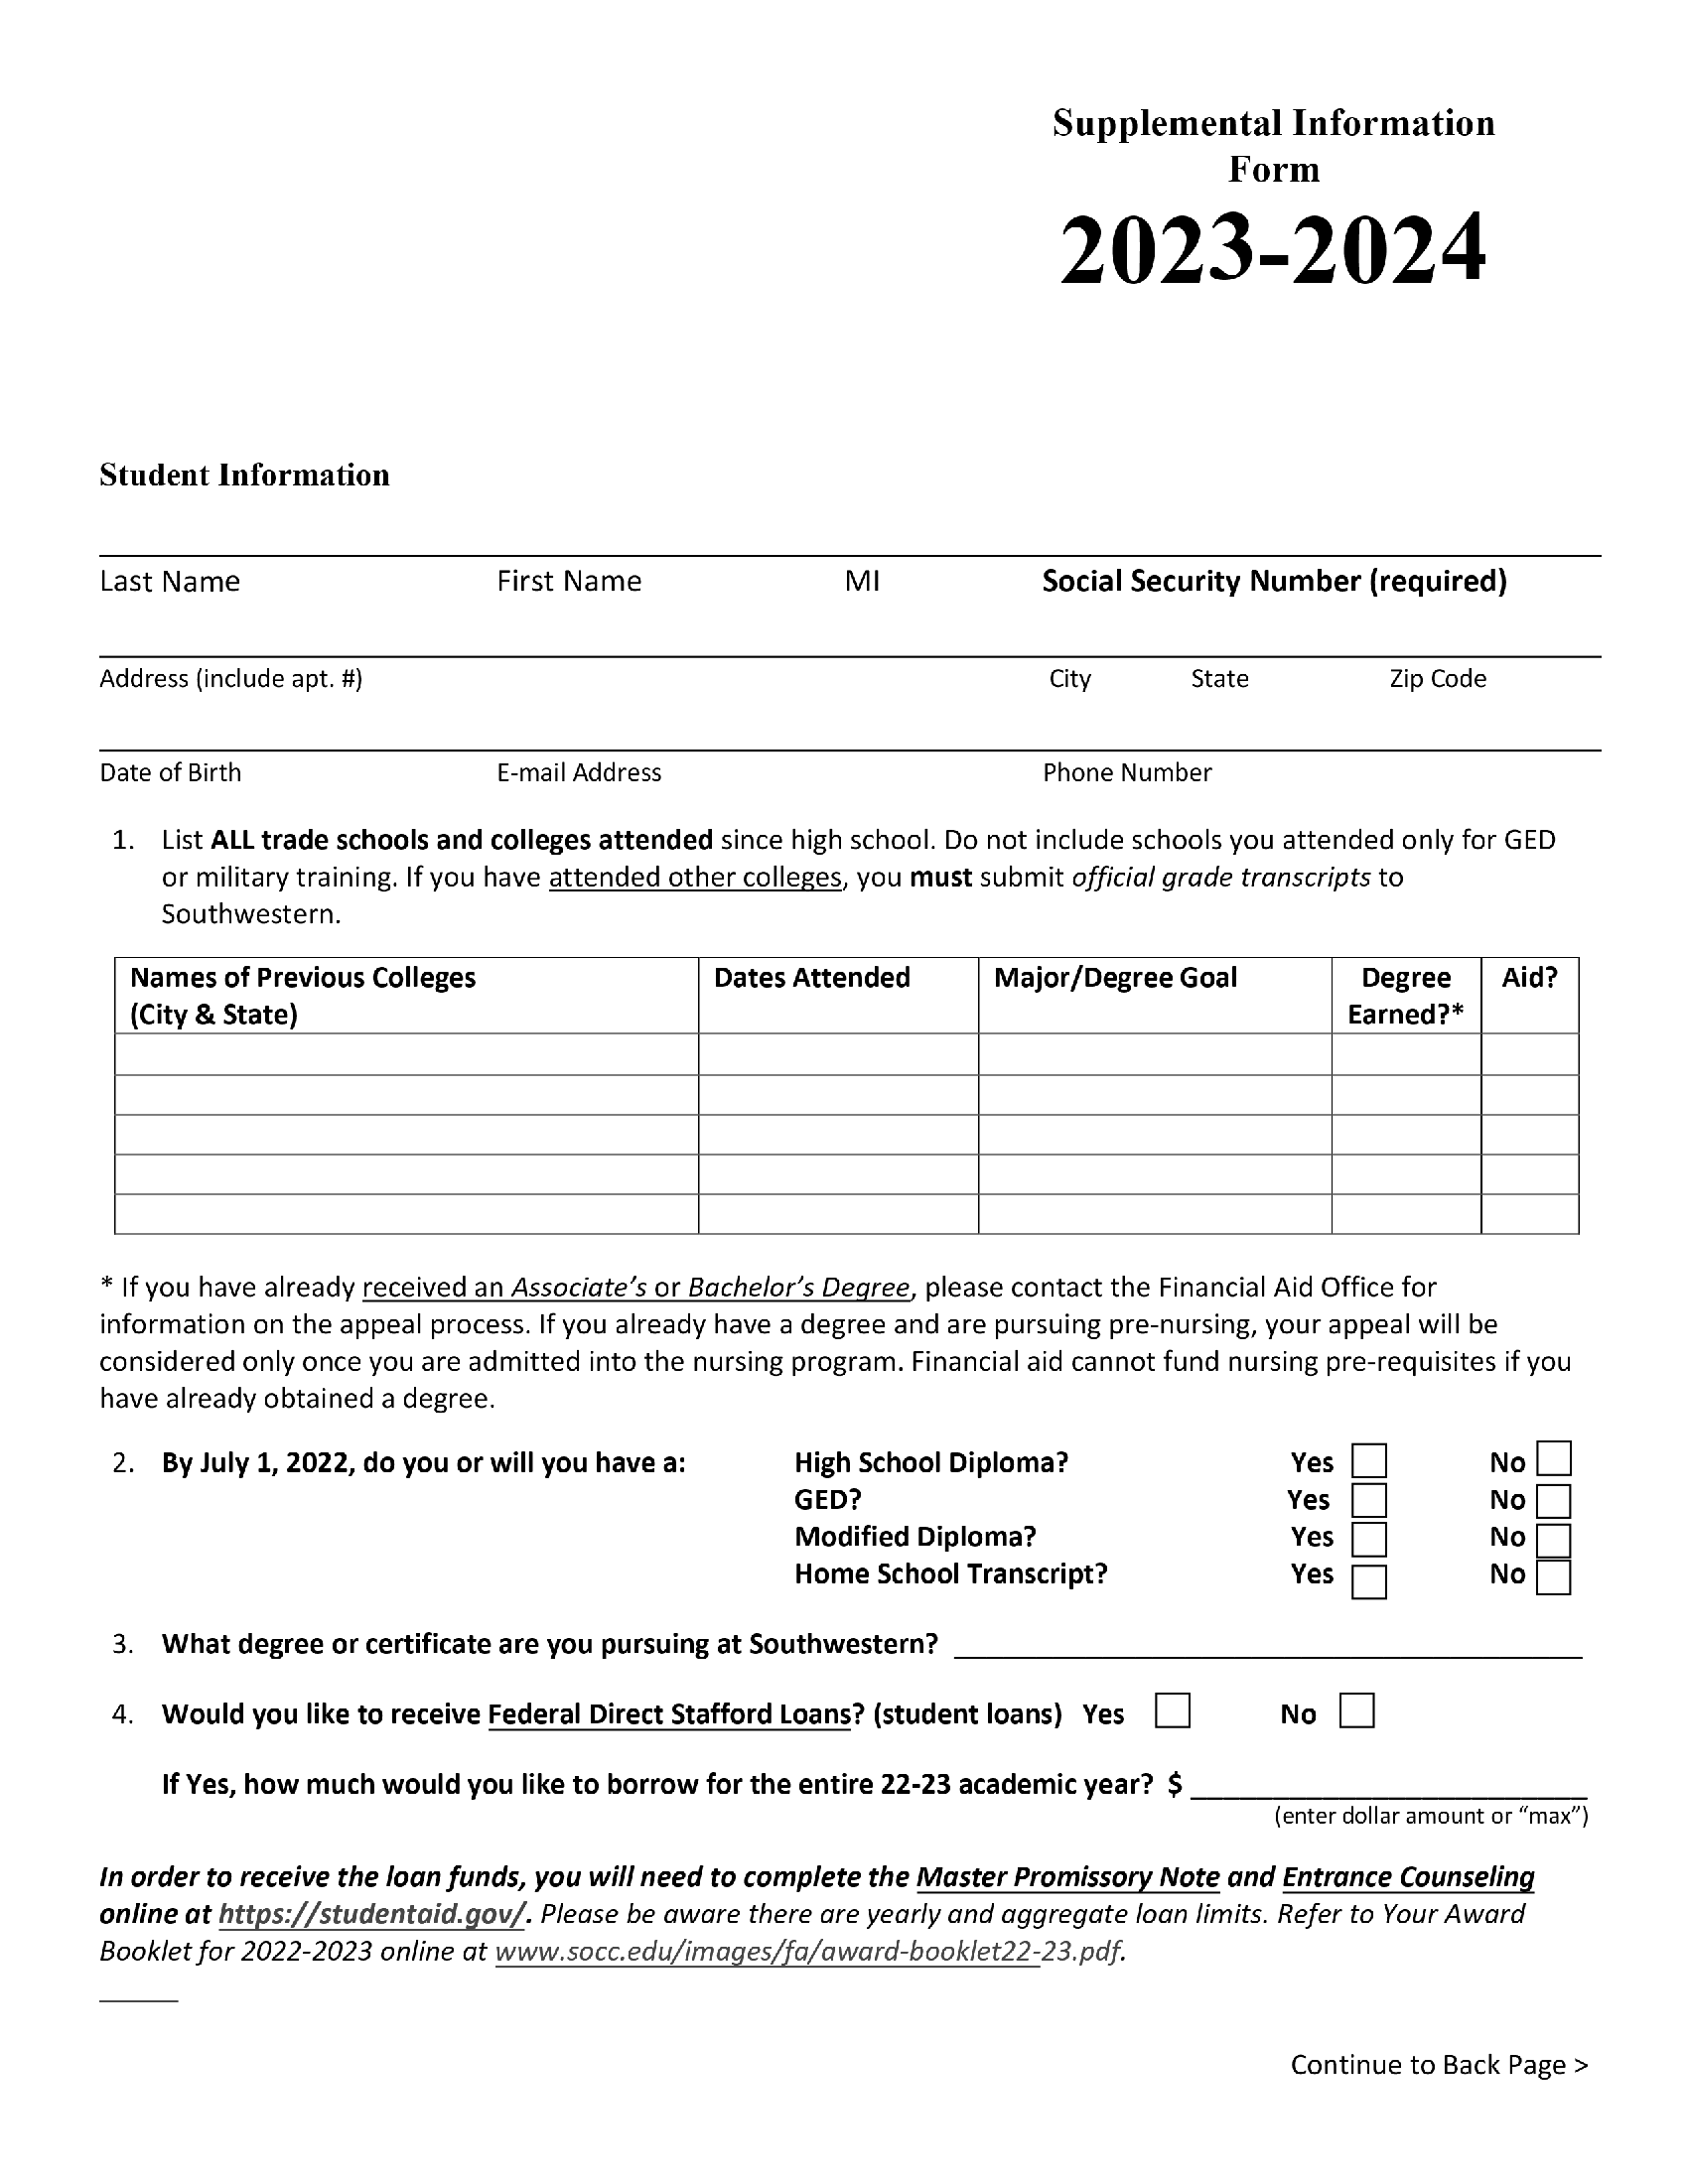 supplemental-information-form-forms-docs-2023